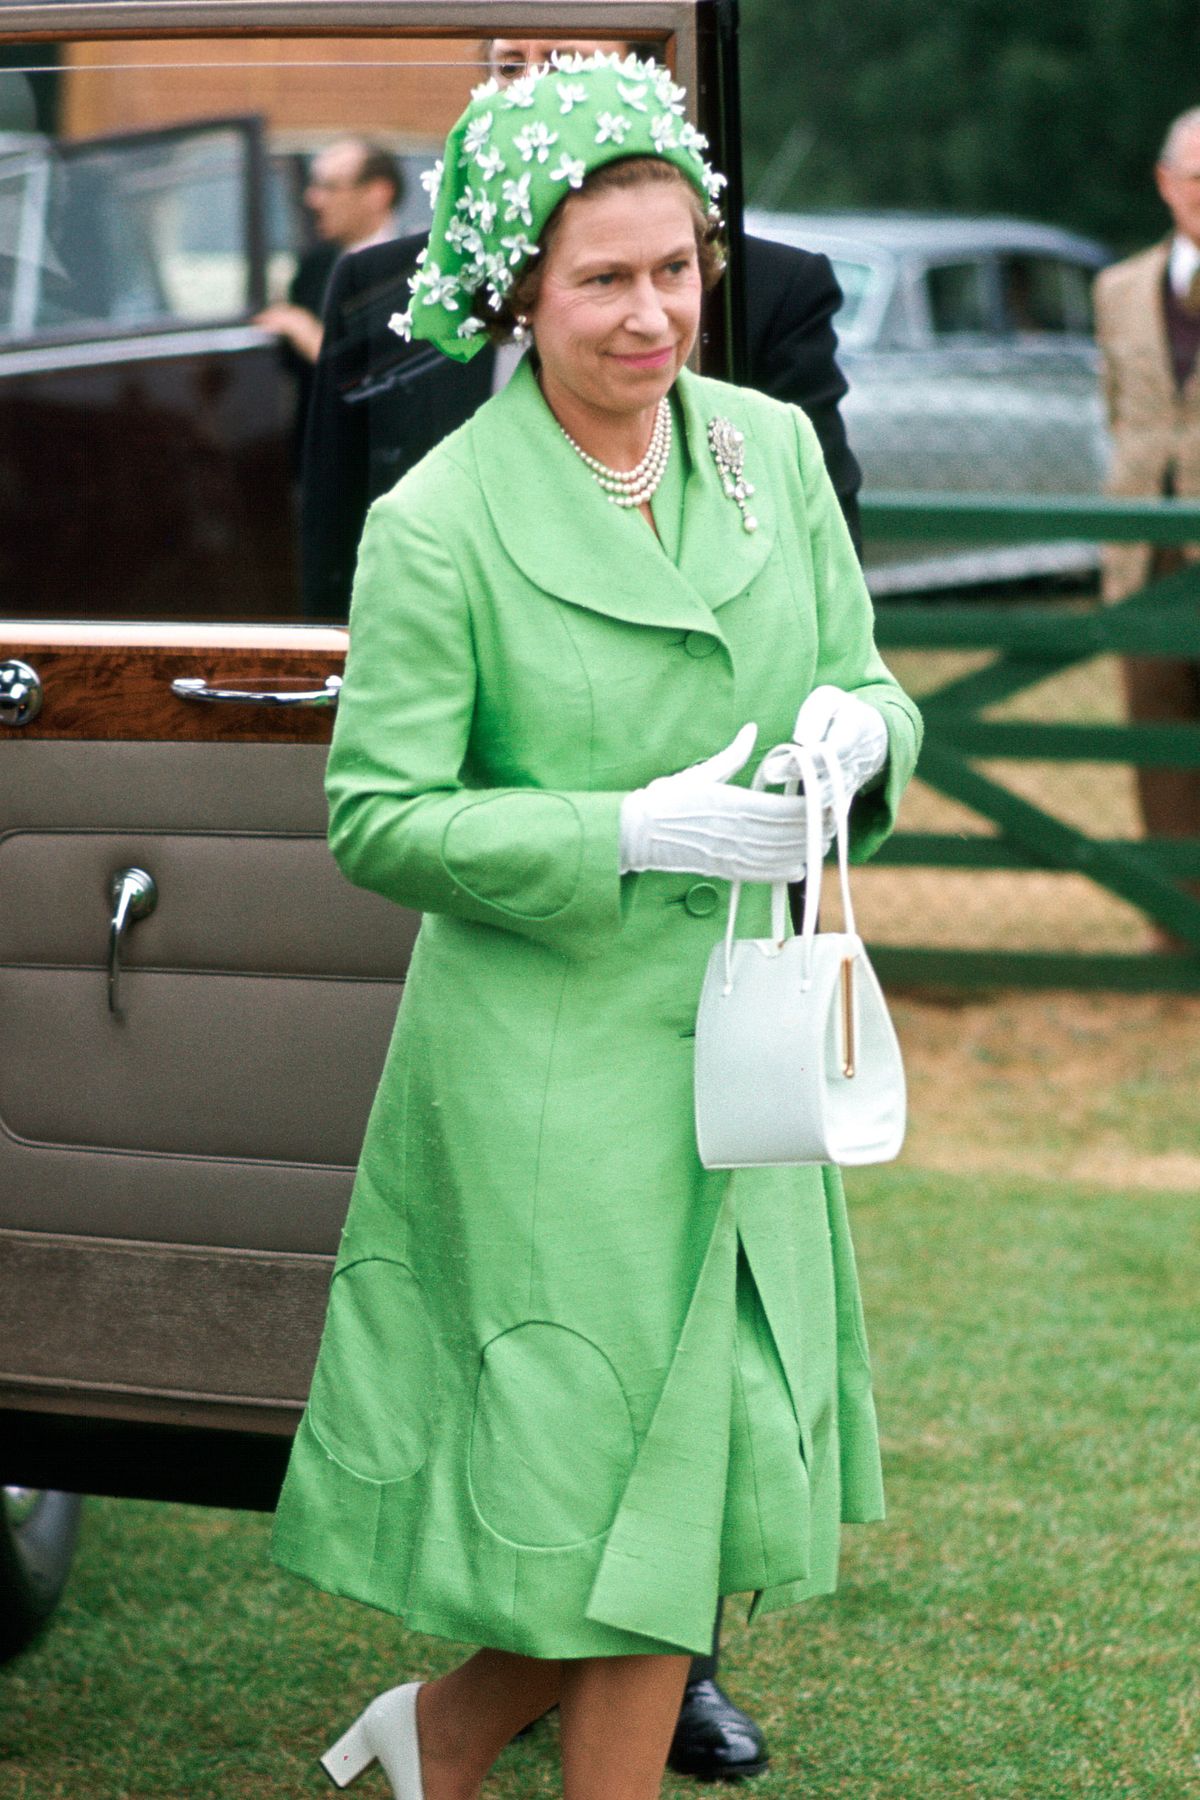 Bí mật đằng sau gu thời trang của Nữ hoàng Anh trong 70 năm trị vì: Dùng trang phục để thể hiện quyền lực - Ảnh 6.